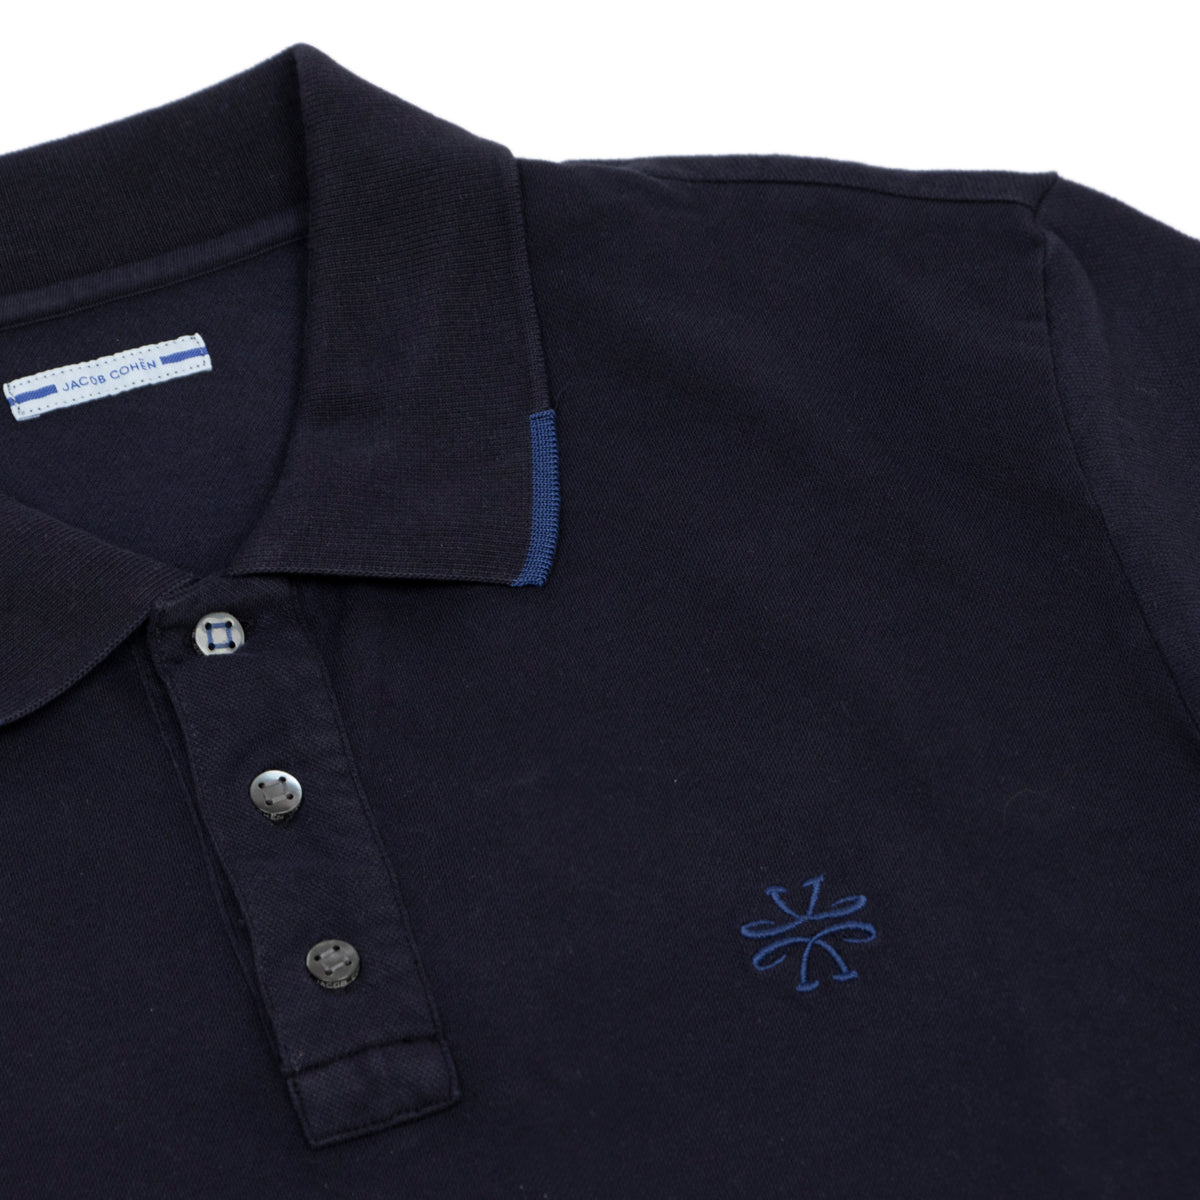 Navy Blue Cotton Polo Shirt  Jacob Cohen   